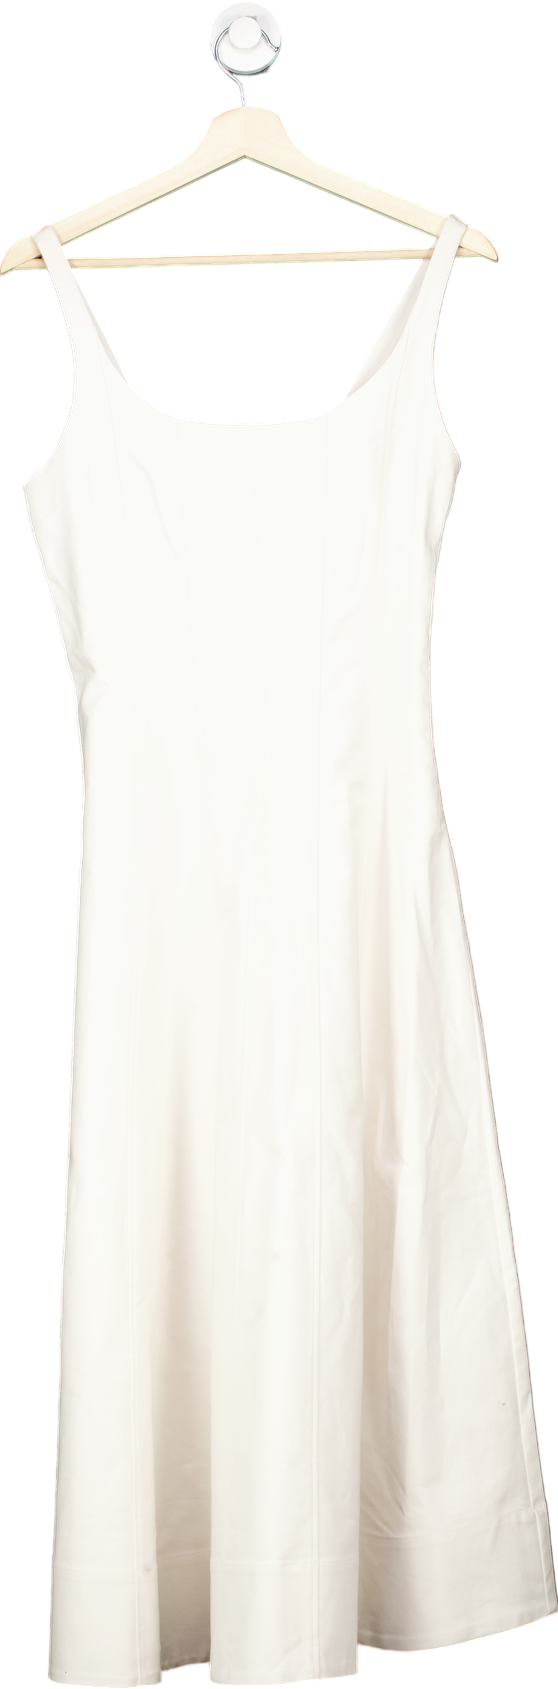 Arket White Sleeveless Dress EUR 36 UK 8